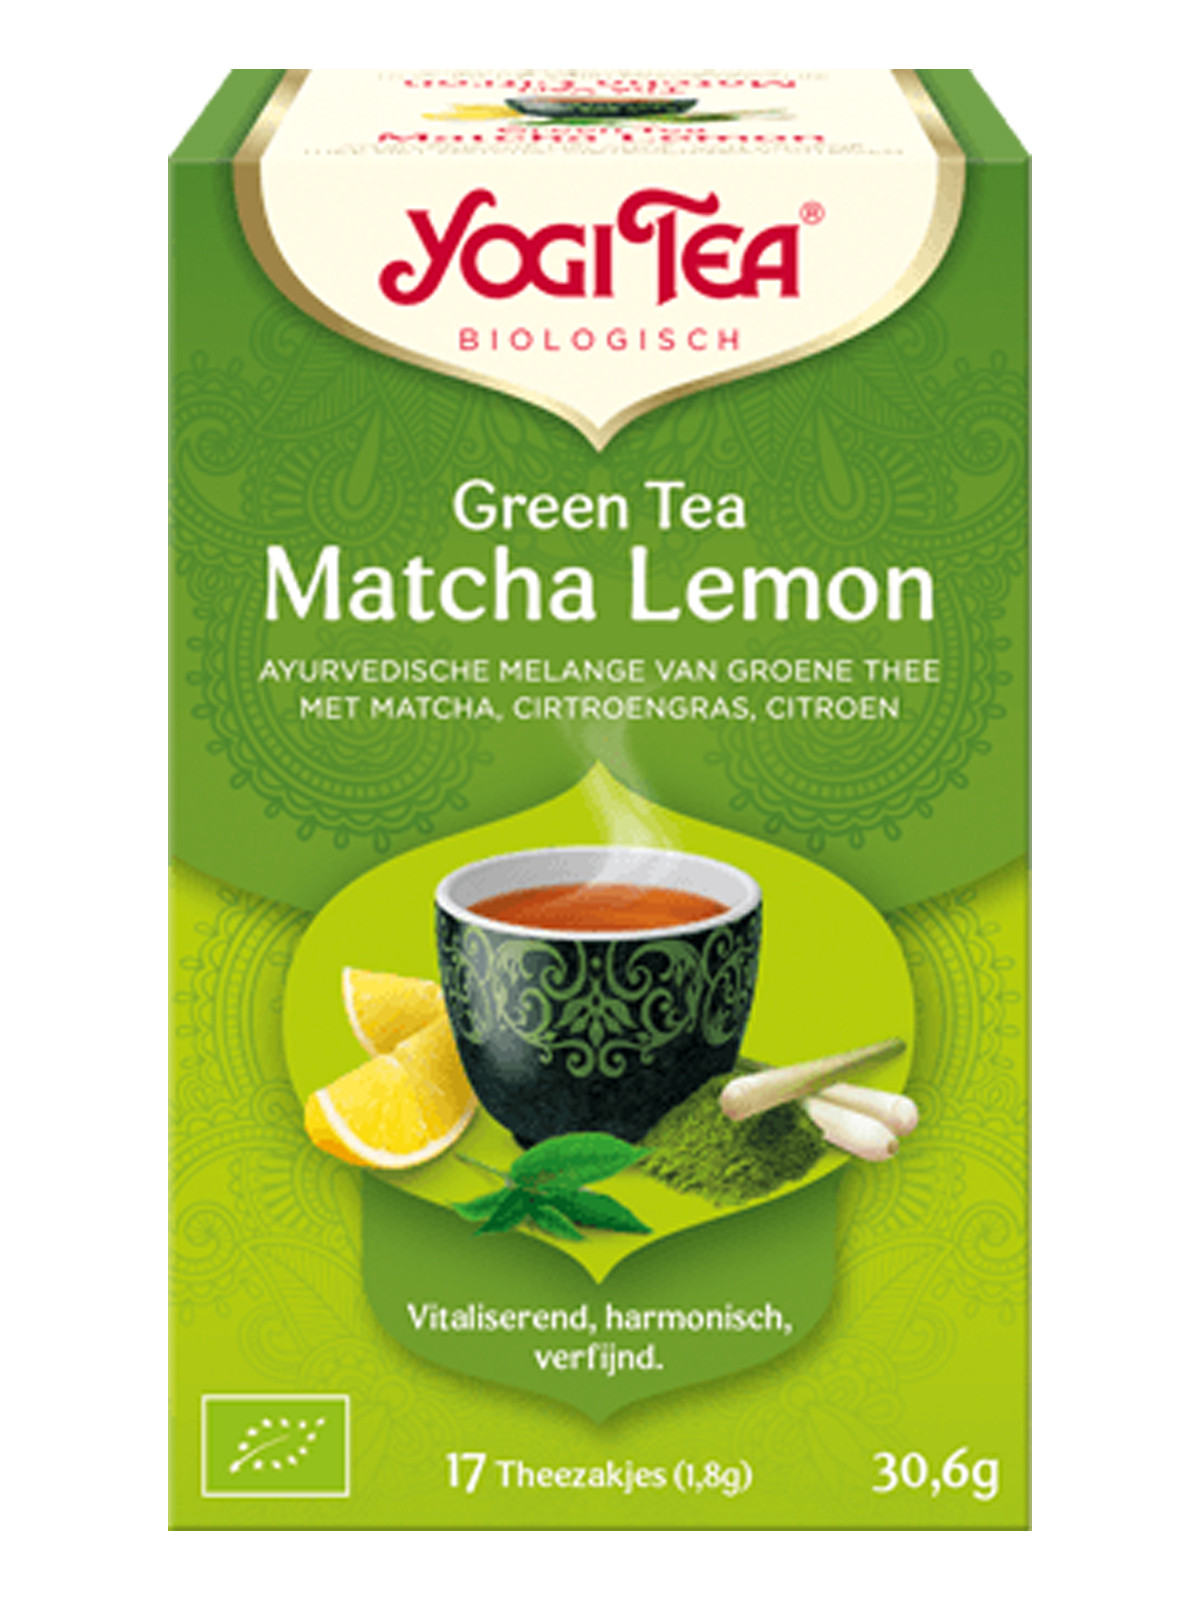 Green Tea Matcha Lemon